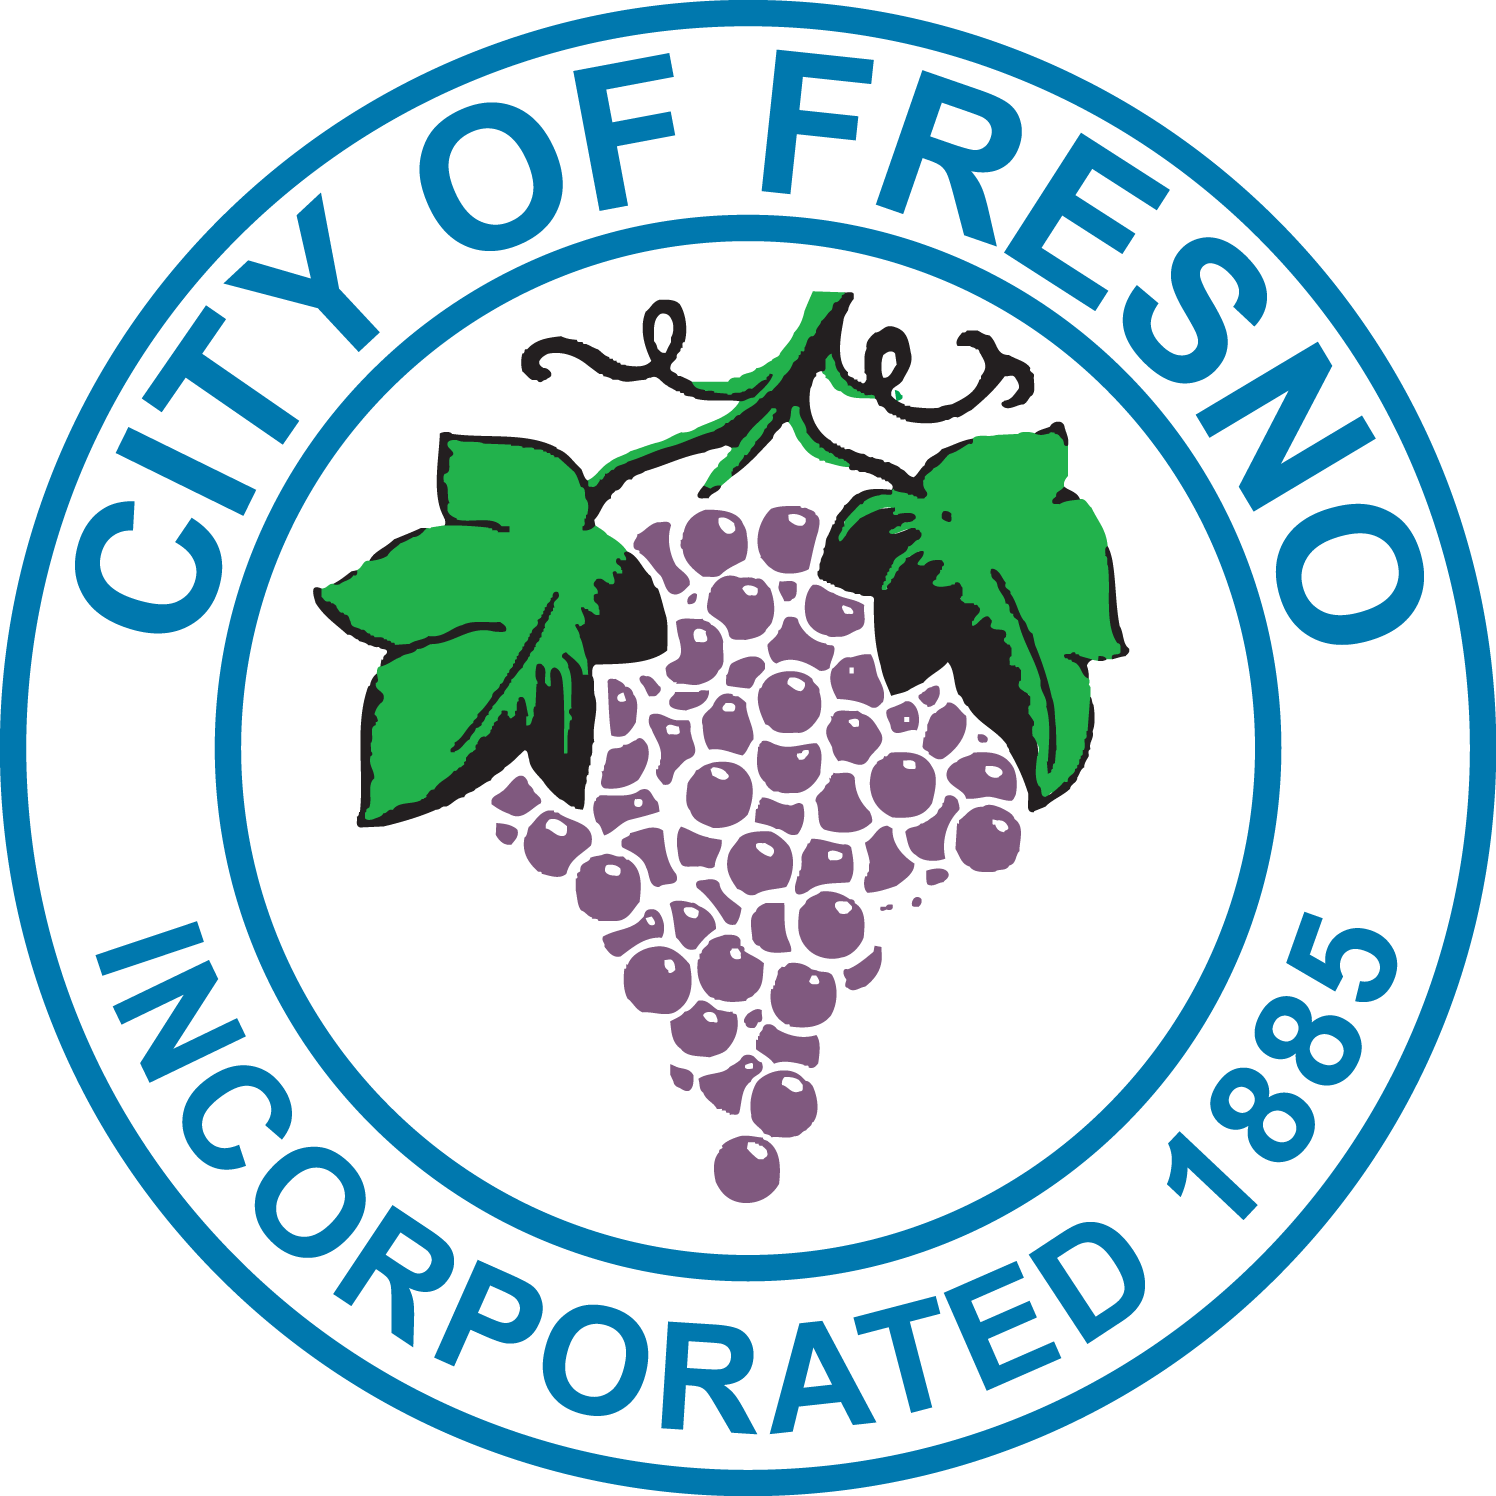 City of Fresno 161 updates — Nextdoor — Nextdoor